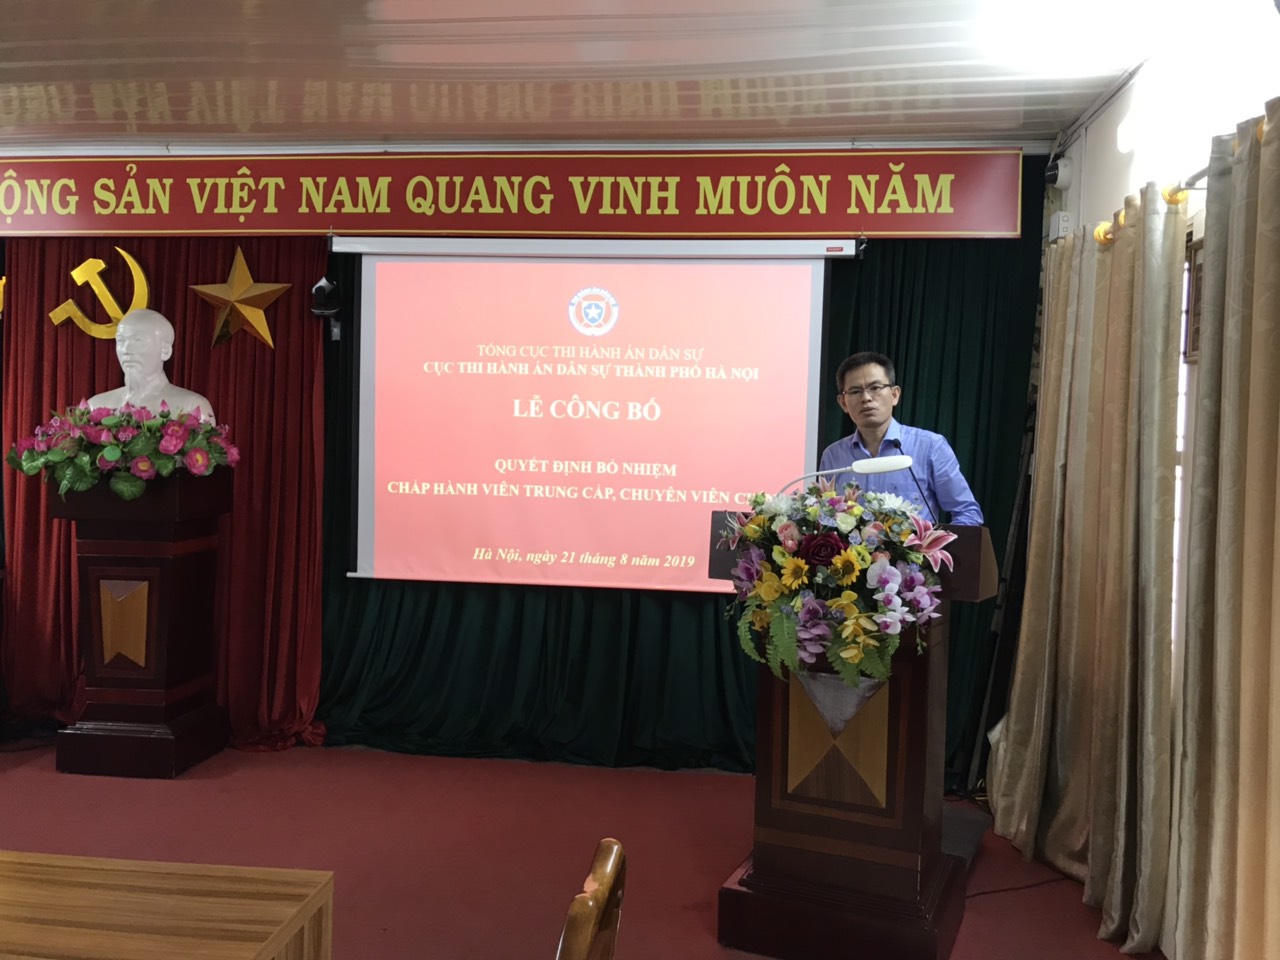 Cục Thi hành án dân sự thành phố Hà Nội tổ chức Lễ công bố Quyết định bổ nhiệm Chấp hành viên trung cấp, Chuyên viên chính năm 2019